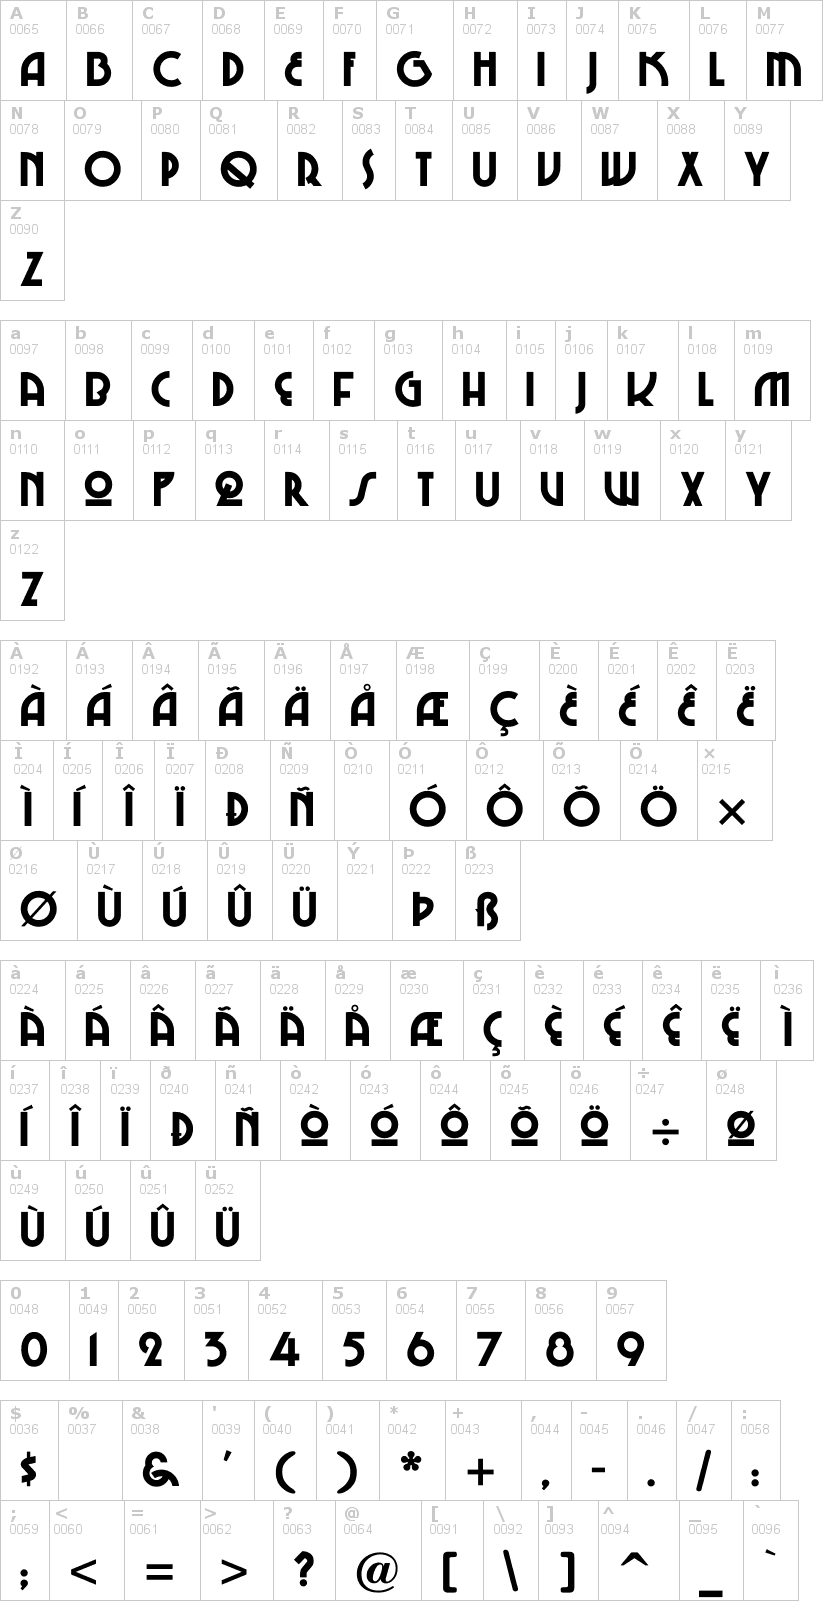 Lettere dell'alfabeto del font chi-town con le quali è possibile realizzare adesivi prespaziati